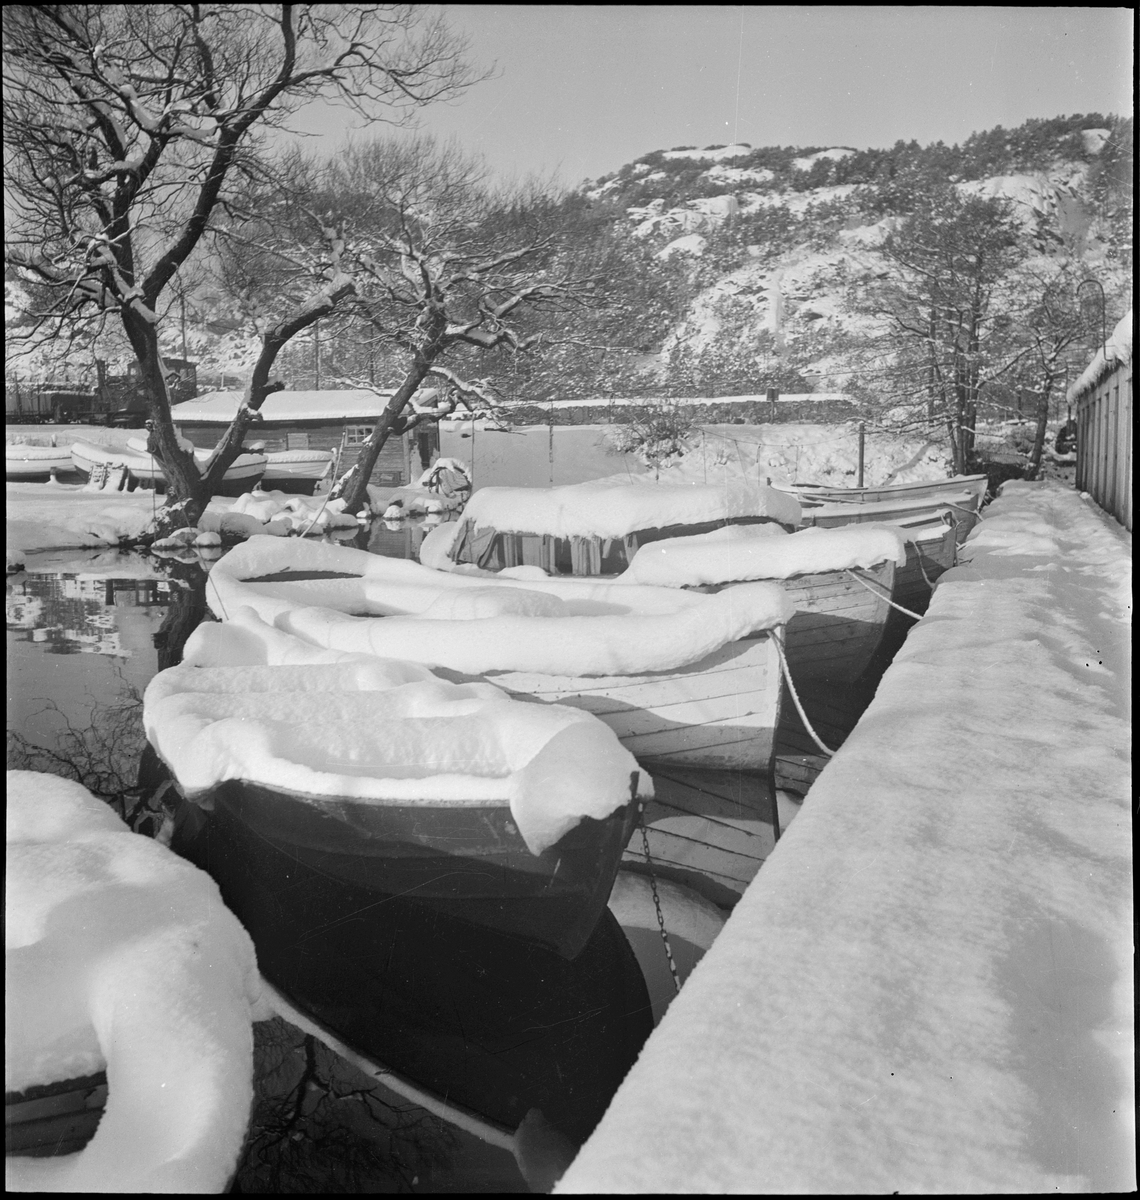 Julehilsen fra Fothuset A/S i Egersund. Småbåter er dekket med snø i ved båthuset i Lervika